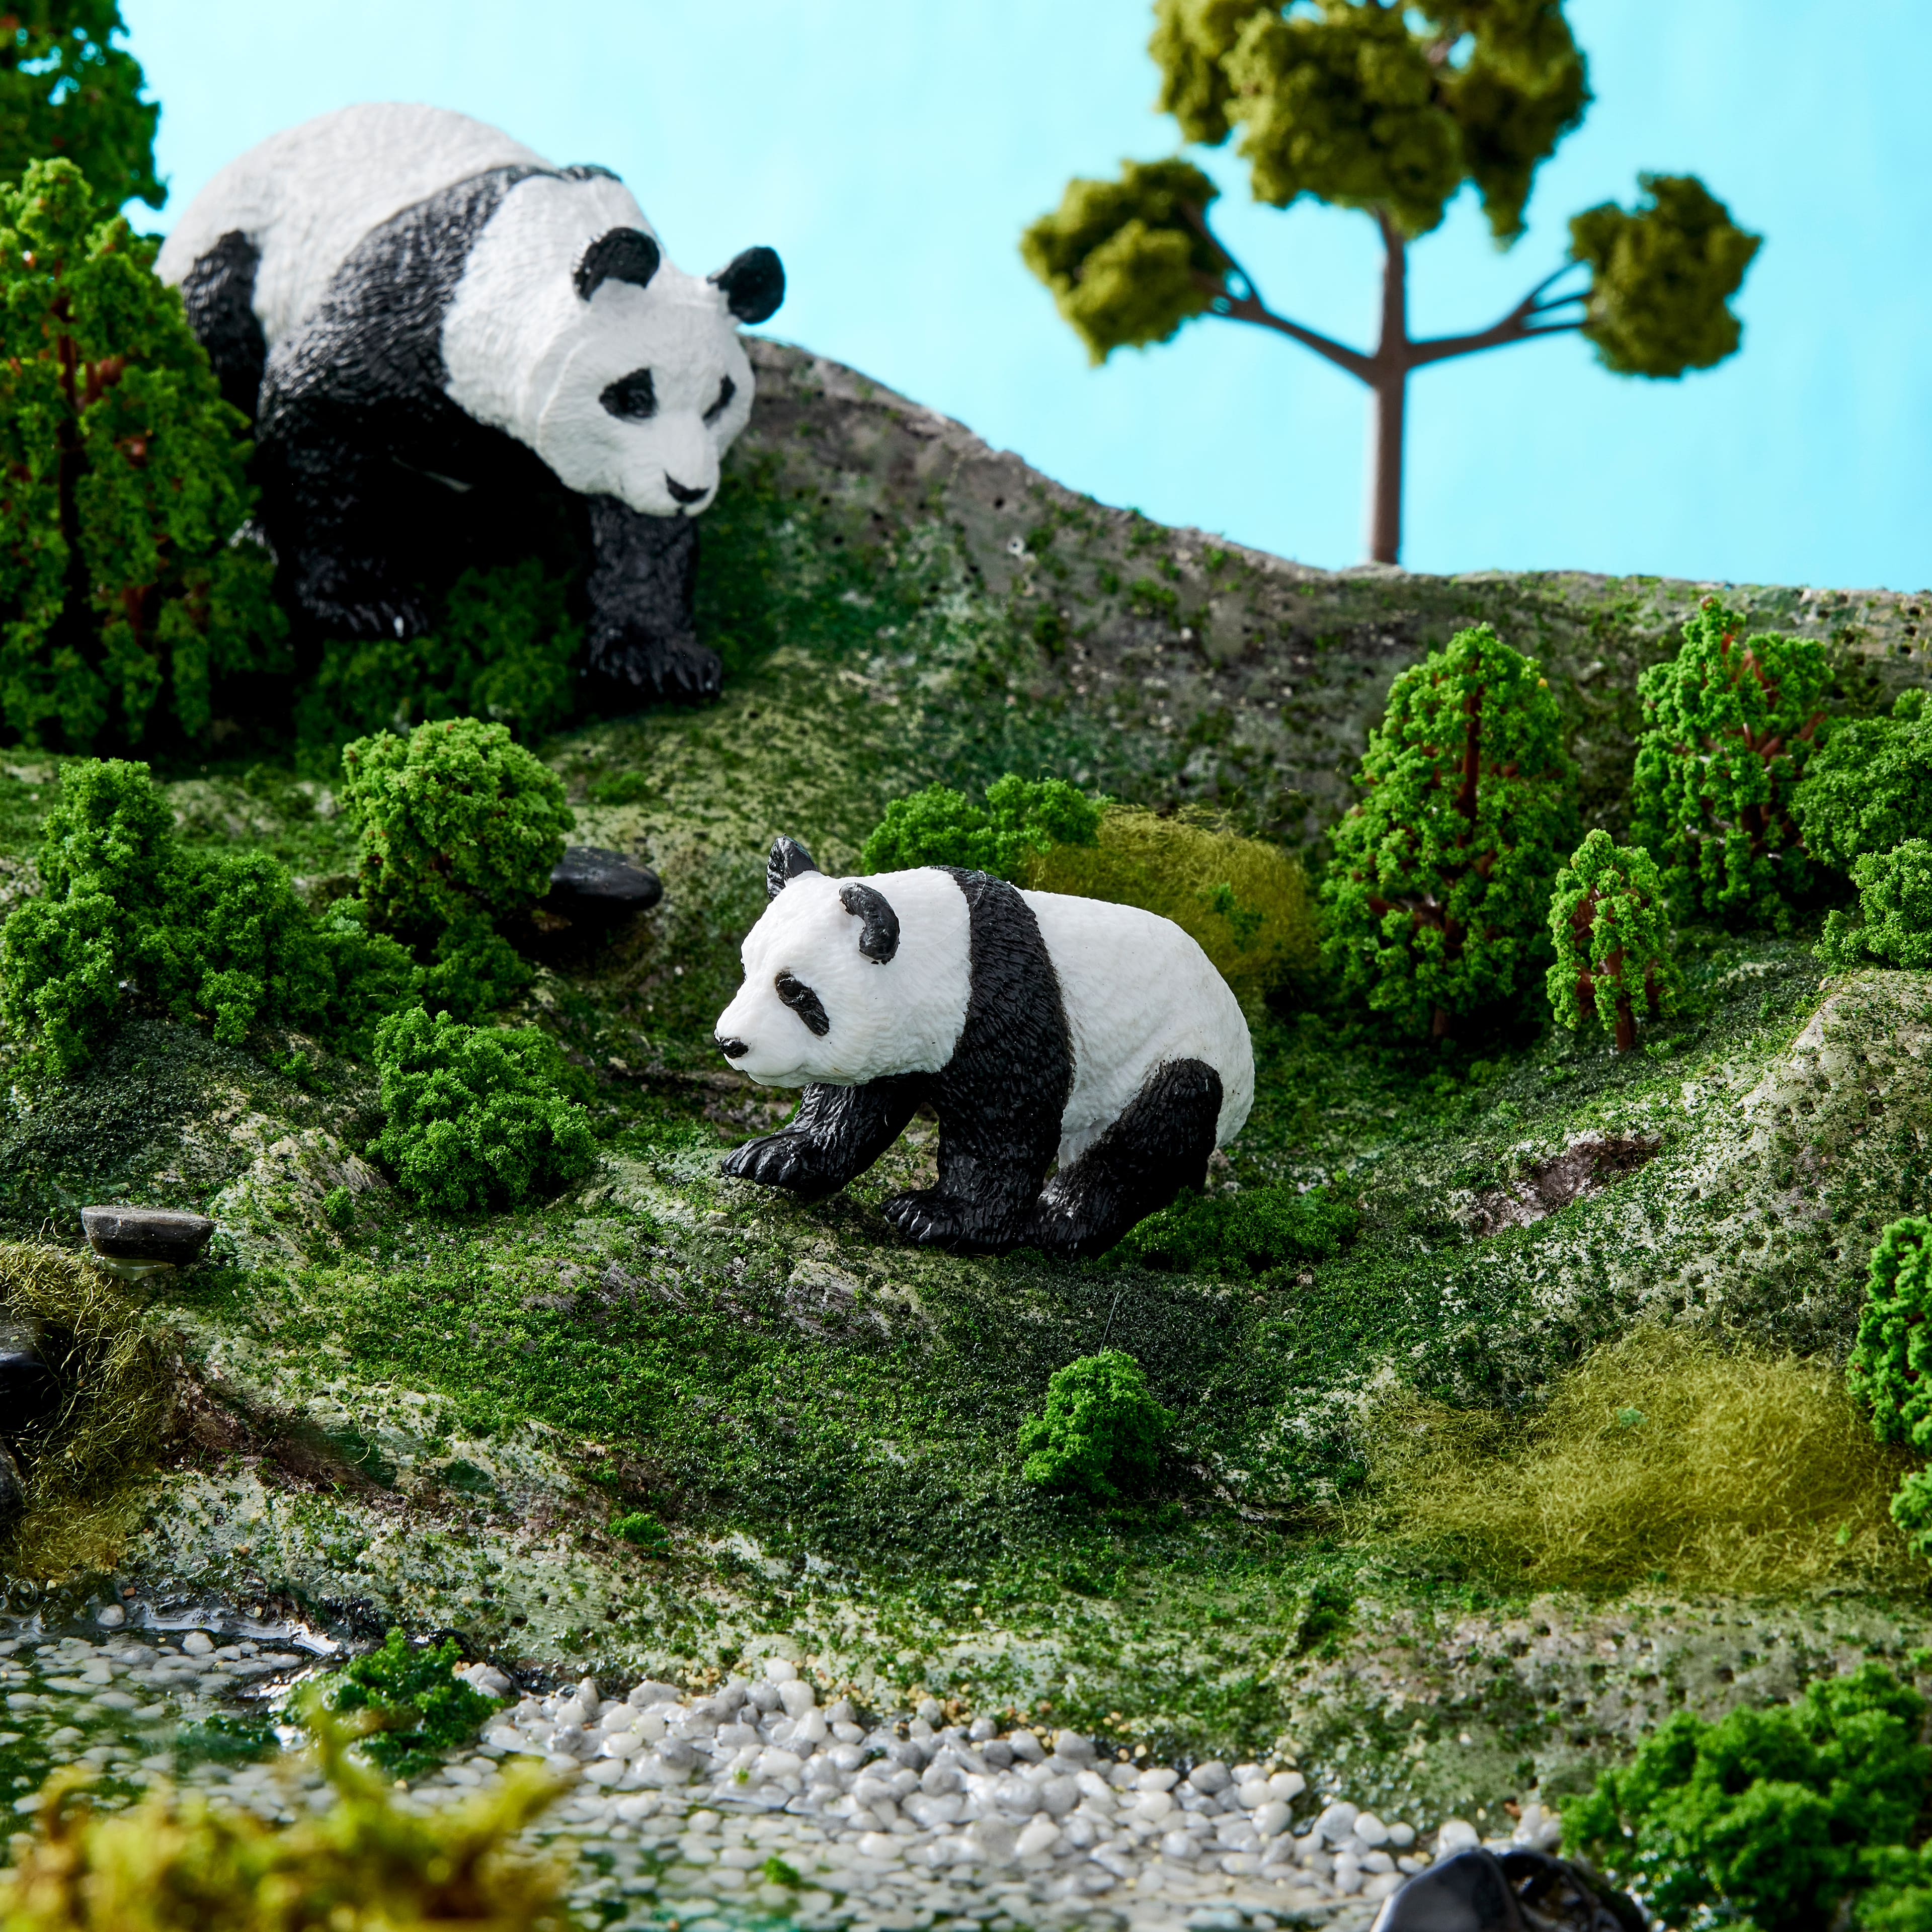 giant panda habitat diorama